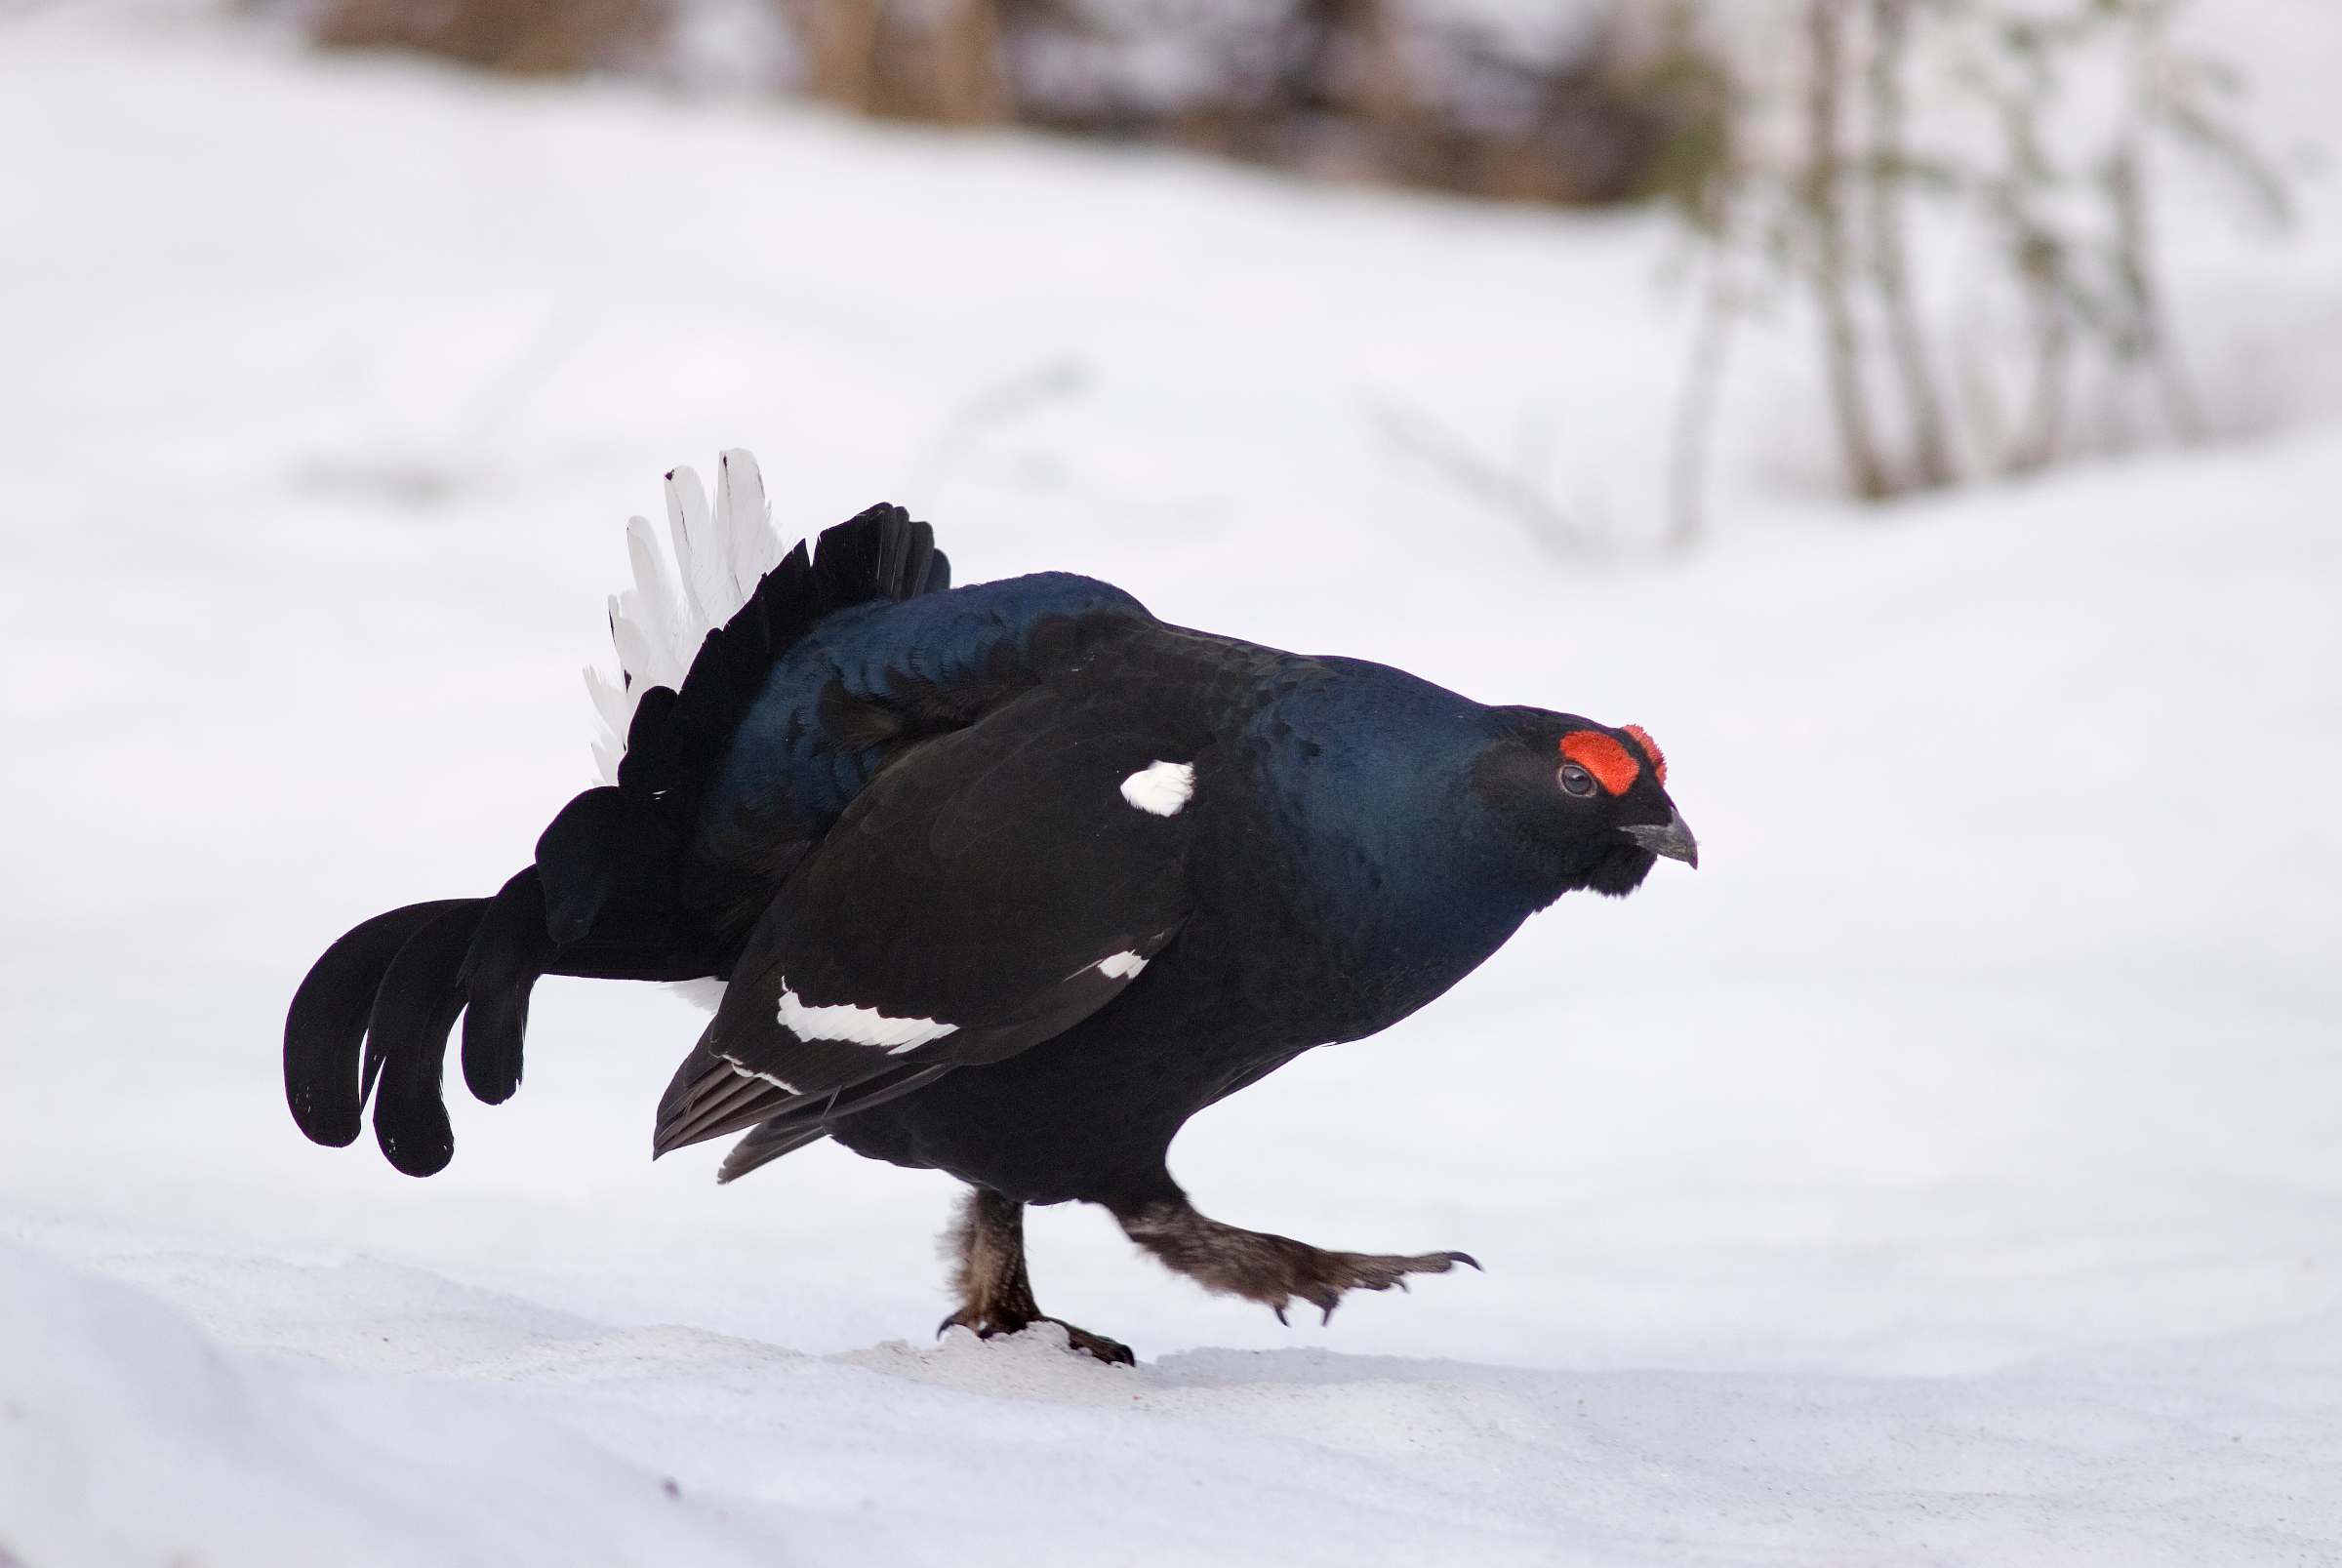 Dunkle gefärbter, hühnerartiger Vogel mit roten Augenwülsten im Schnee